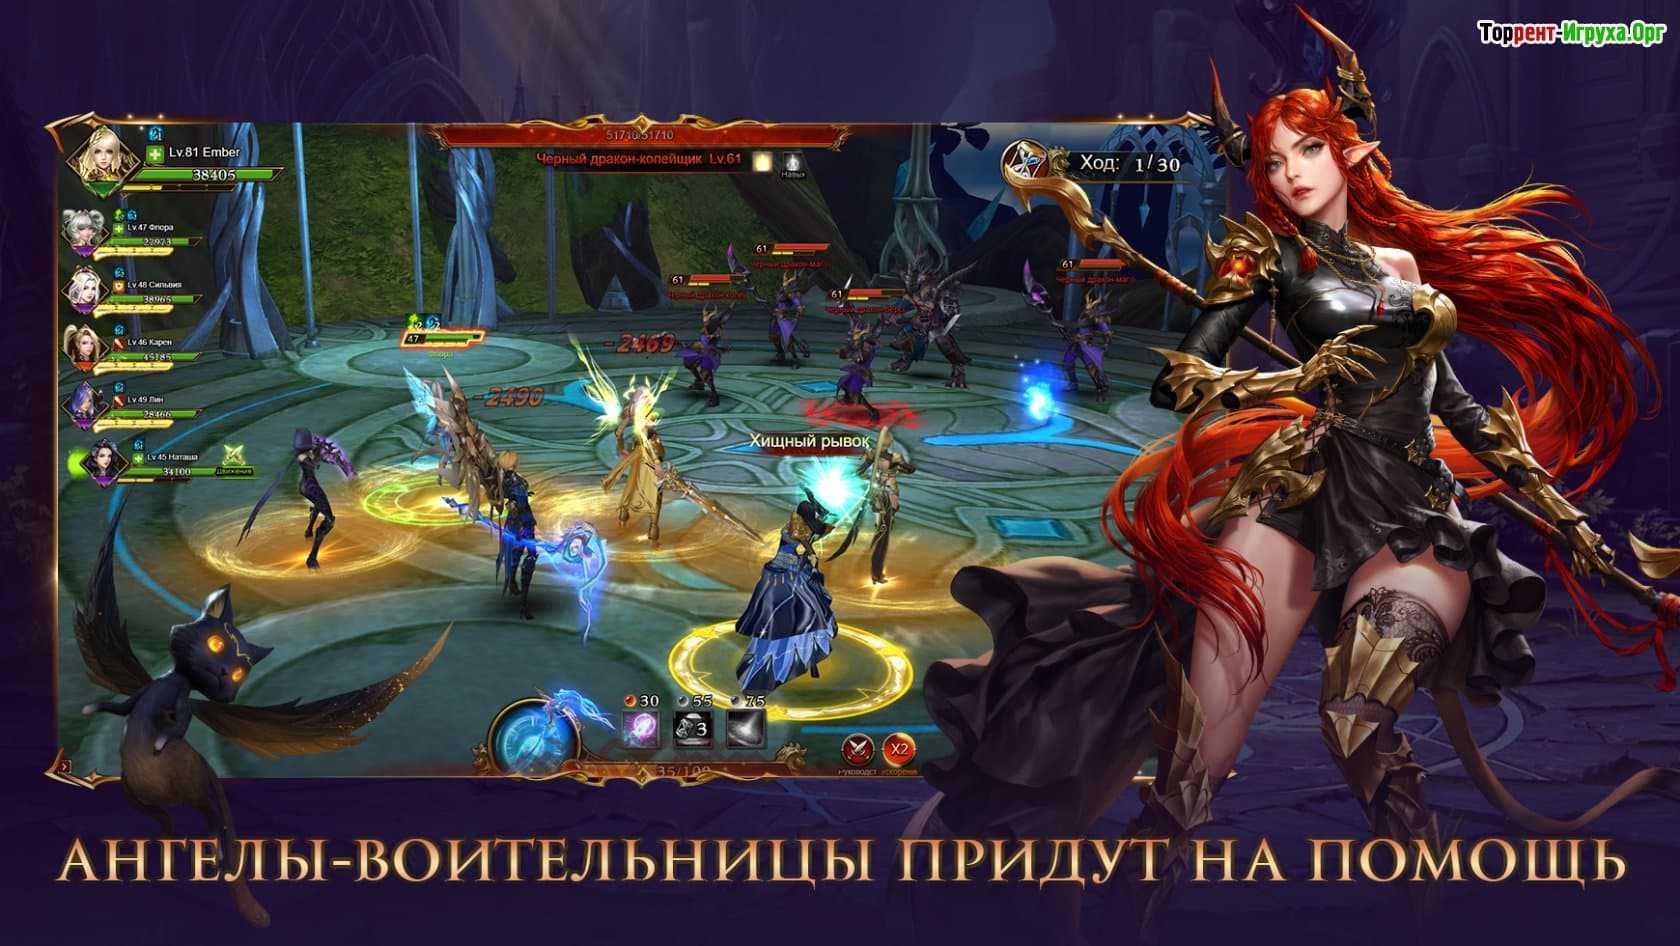 101XP – крупный российский издатель браузерных, клиентских и мобильных игр, в распоряжении которого имеются такие популярные проекты, как KingsRoad, Demon Slayer и Cultures Online